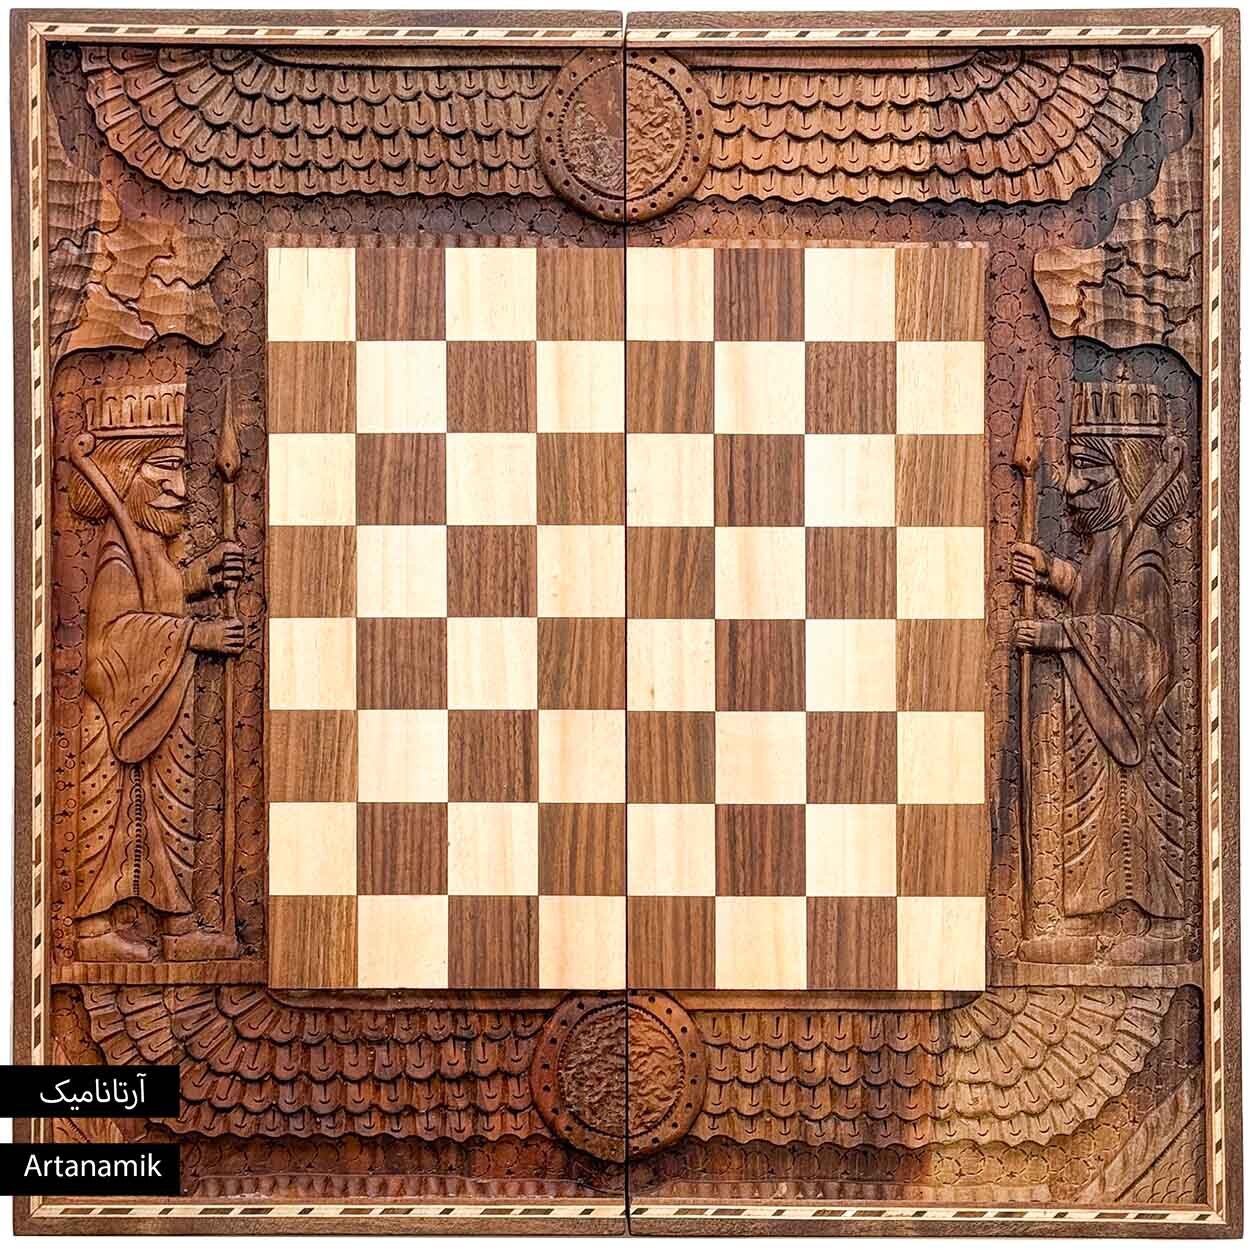  تخته نرد منبت کاری شده و شطرنج هخامنشی | آرتانامیک 